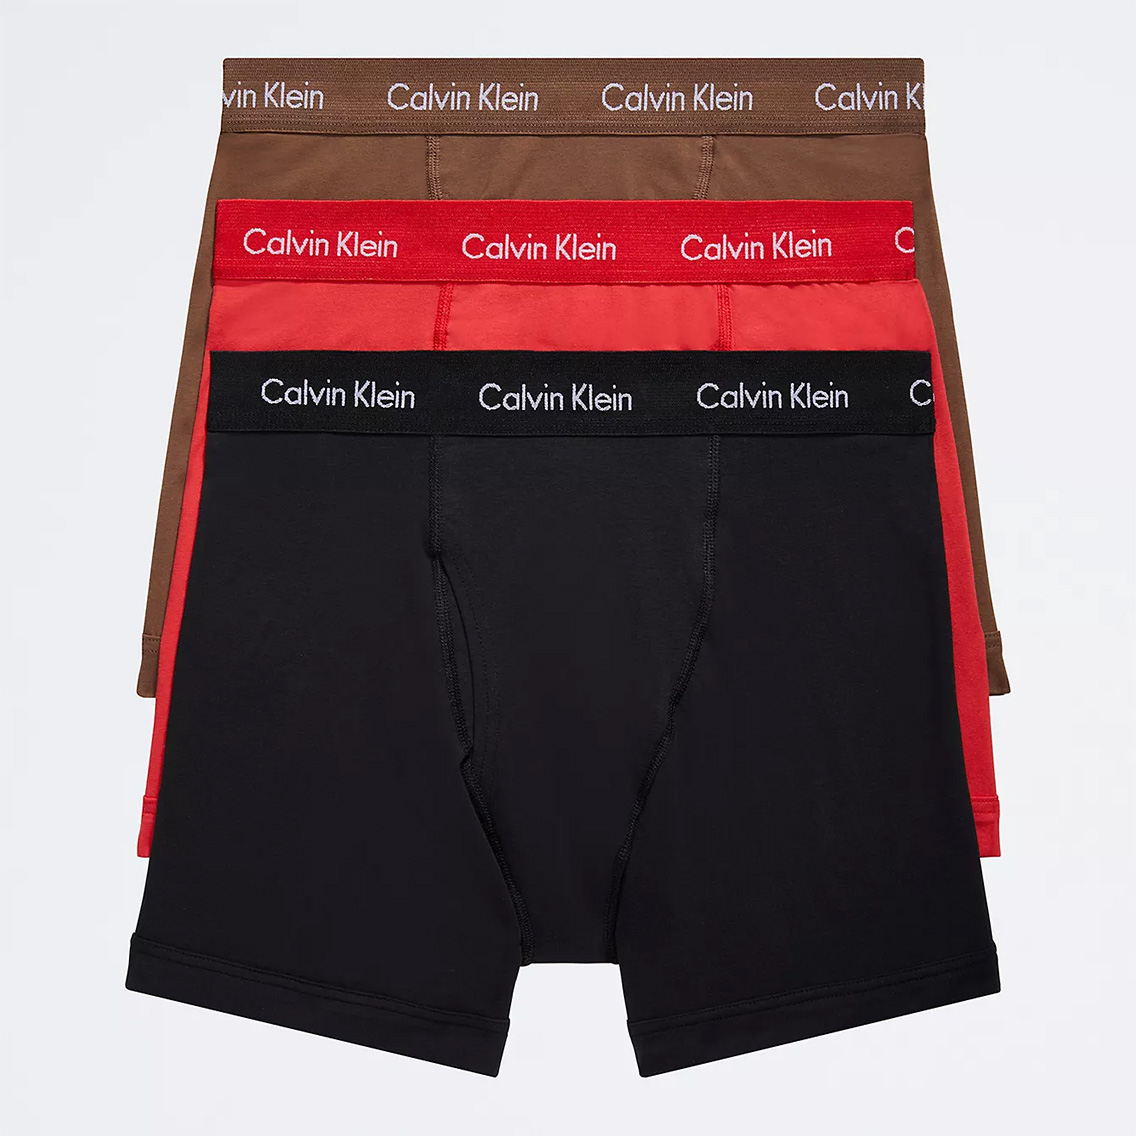 [NB2616-957] Calvin Klein カルバンクライン ボクサーパンツ メンズ アンダーウェア インナー 男性 下着 ブランド おすすめ 人気 プレゼ